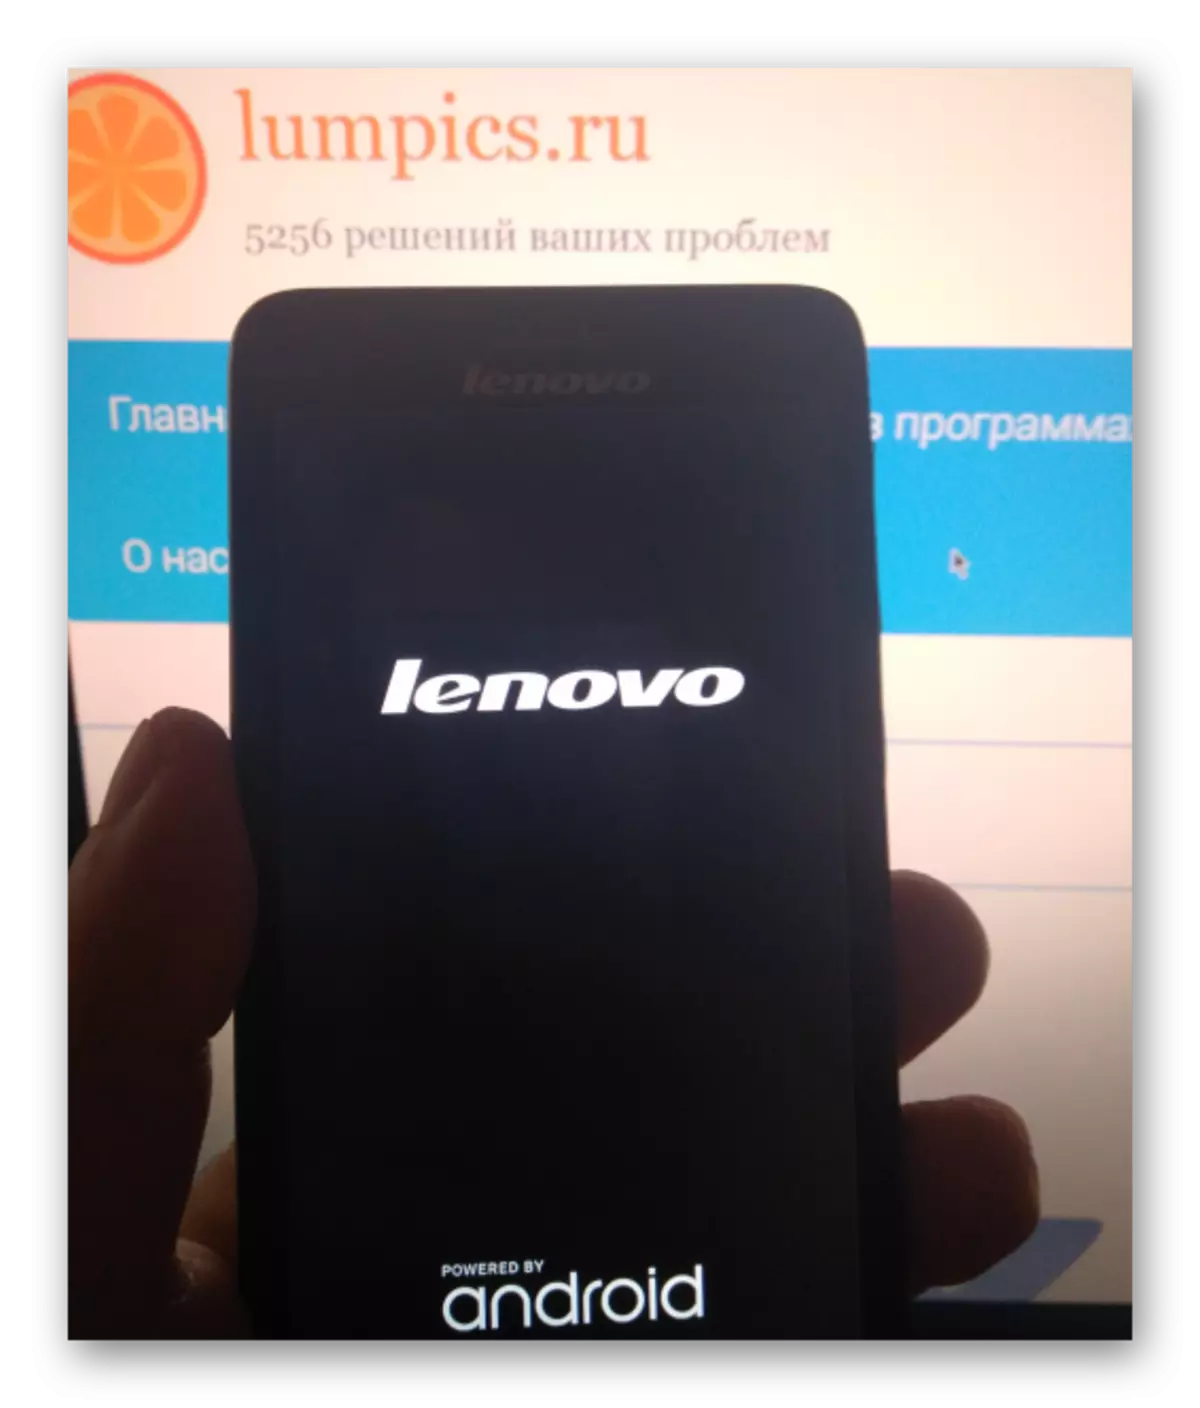 Lenovo S660 download sawise perangkat kukuh liwat SP Flash Tool